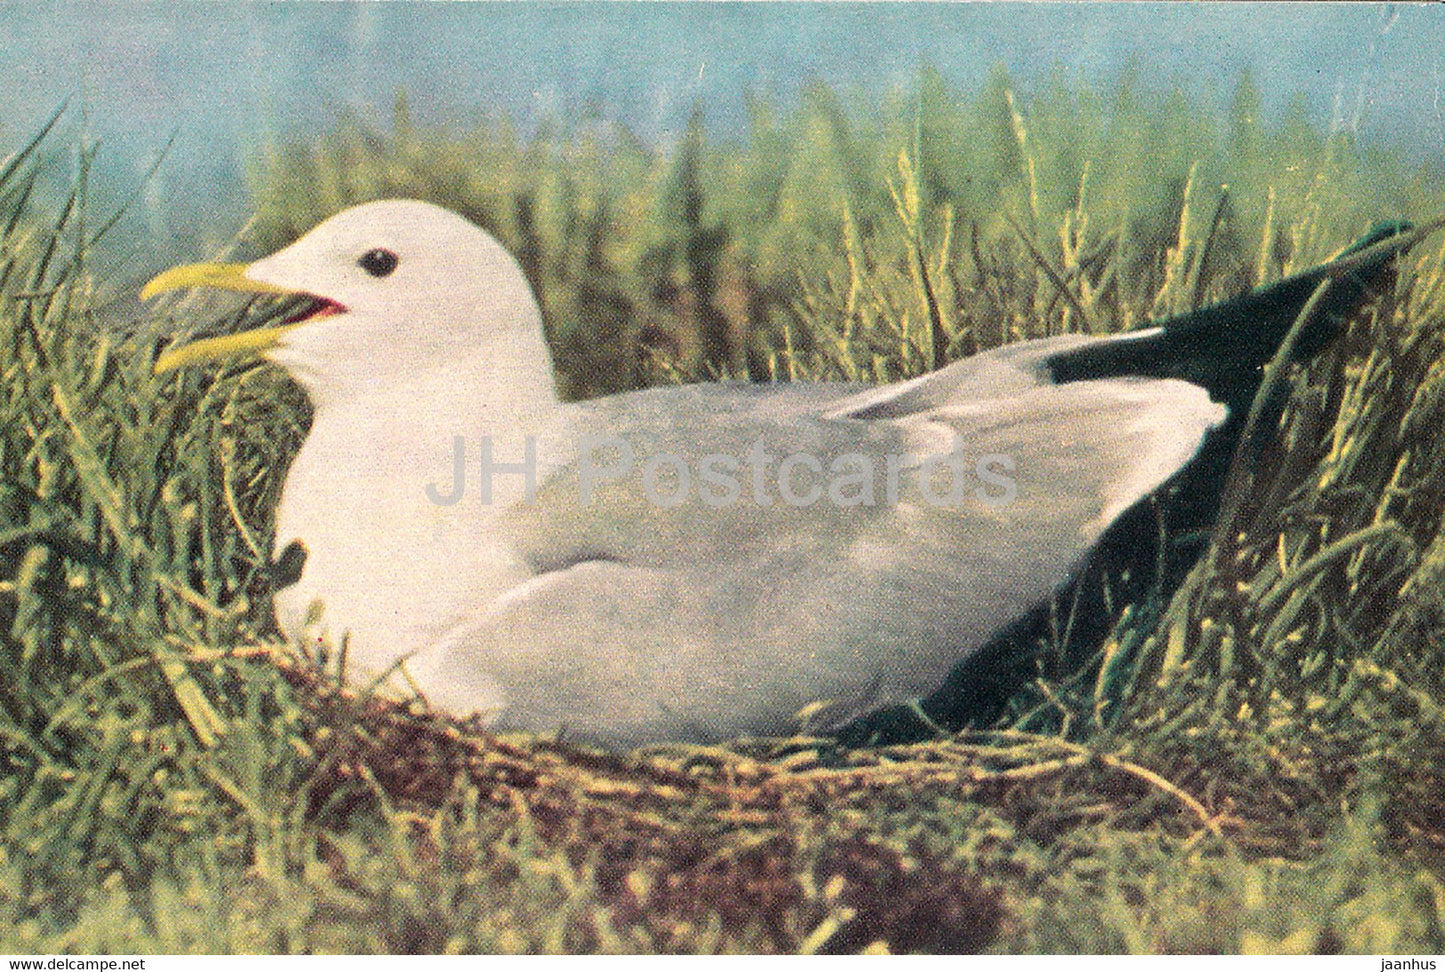 Common gull - Larus canus - birds - 1968 - Russia USSR - unused - JH Postcards